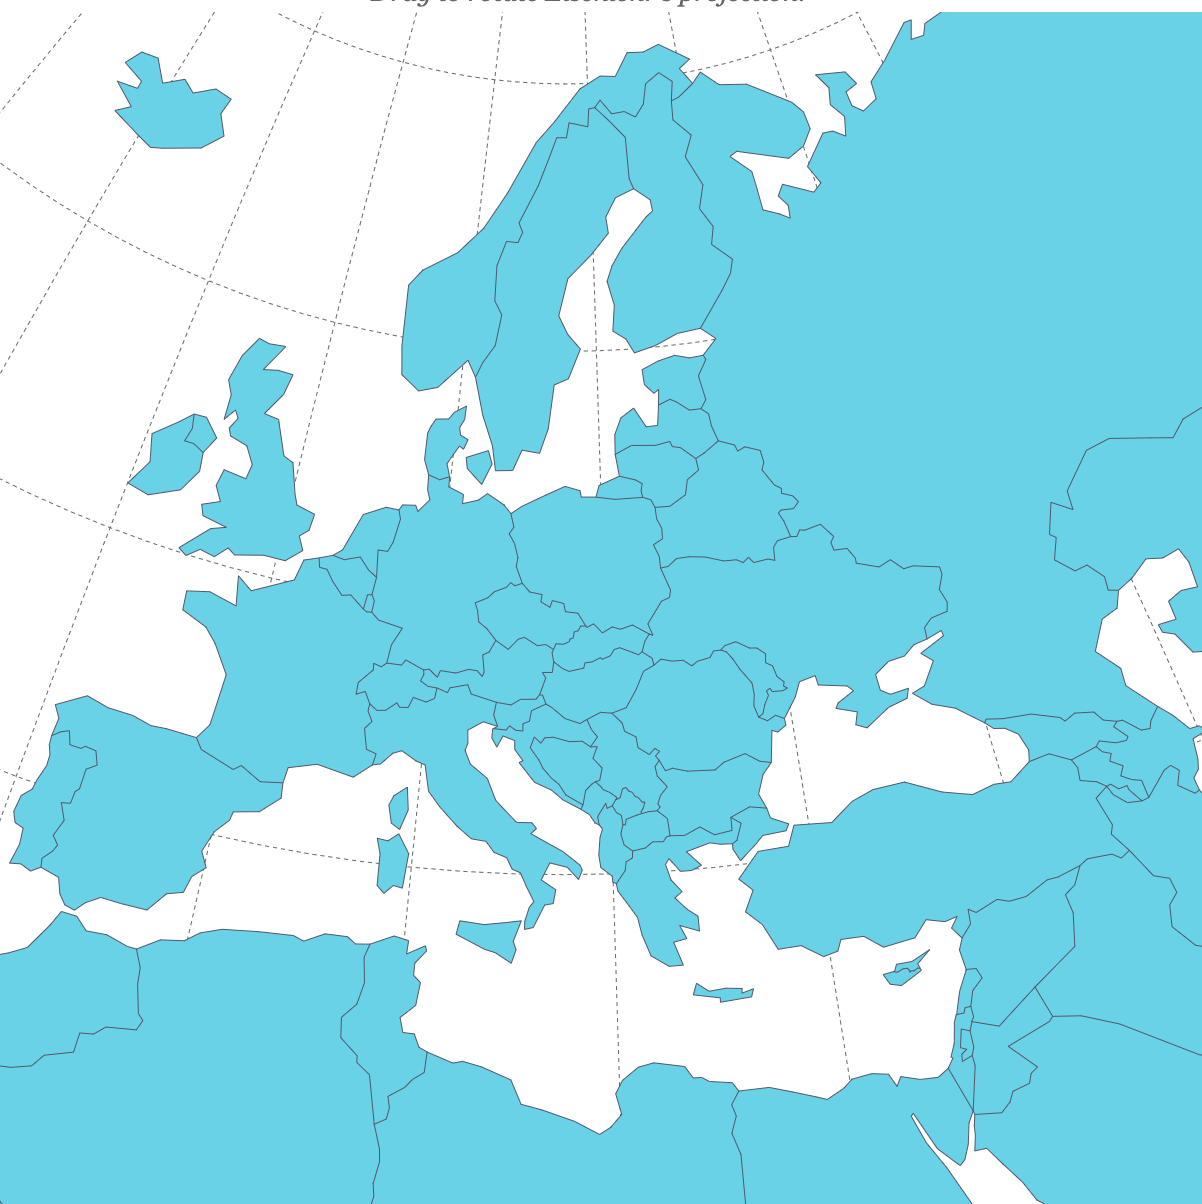 Europe eSIM Data Plans